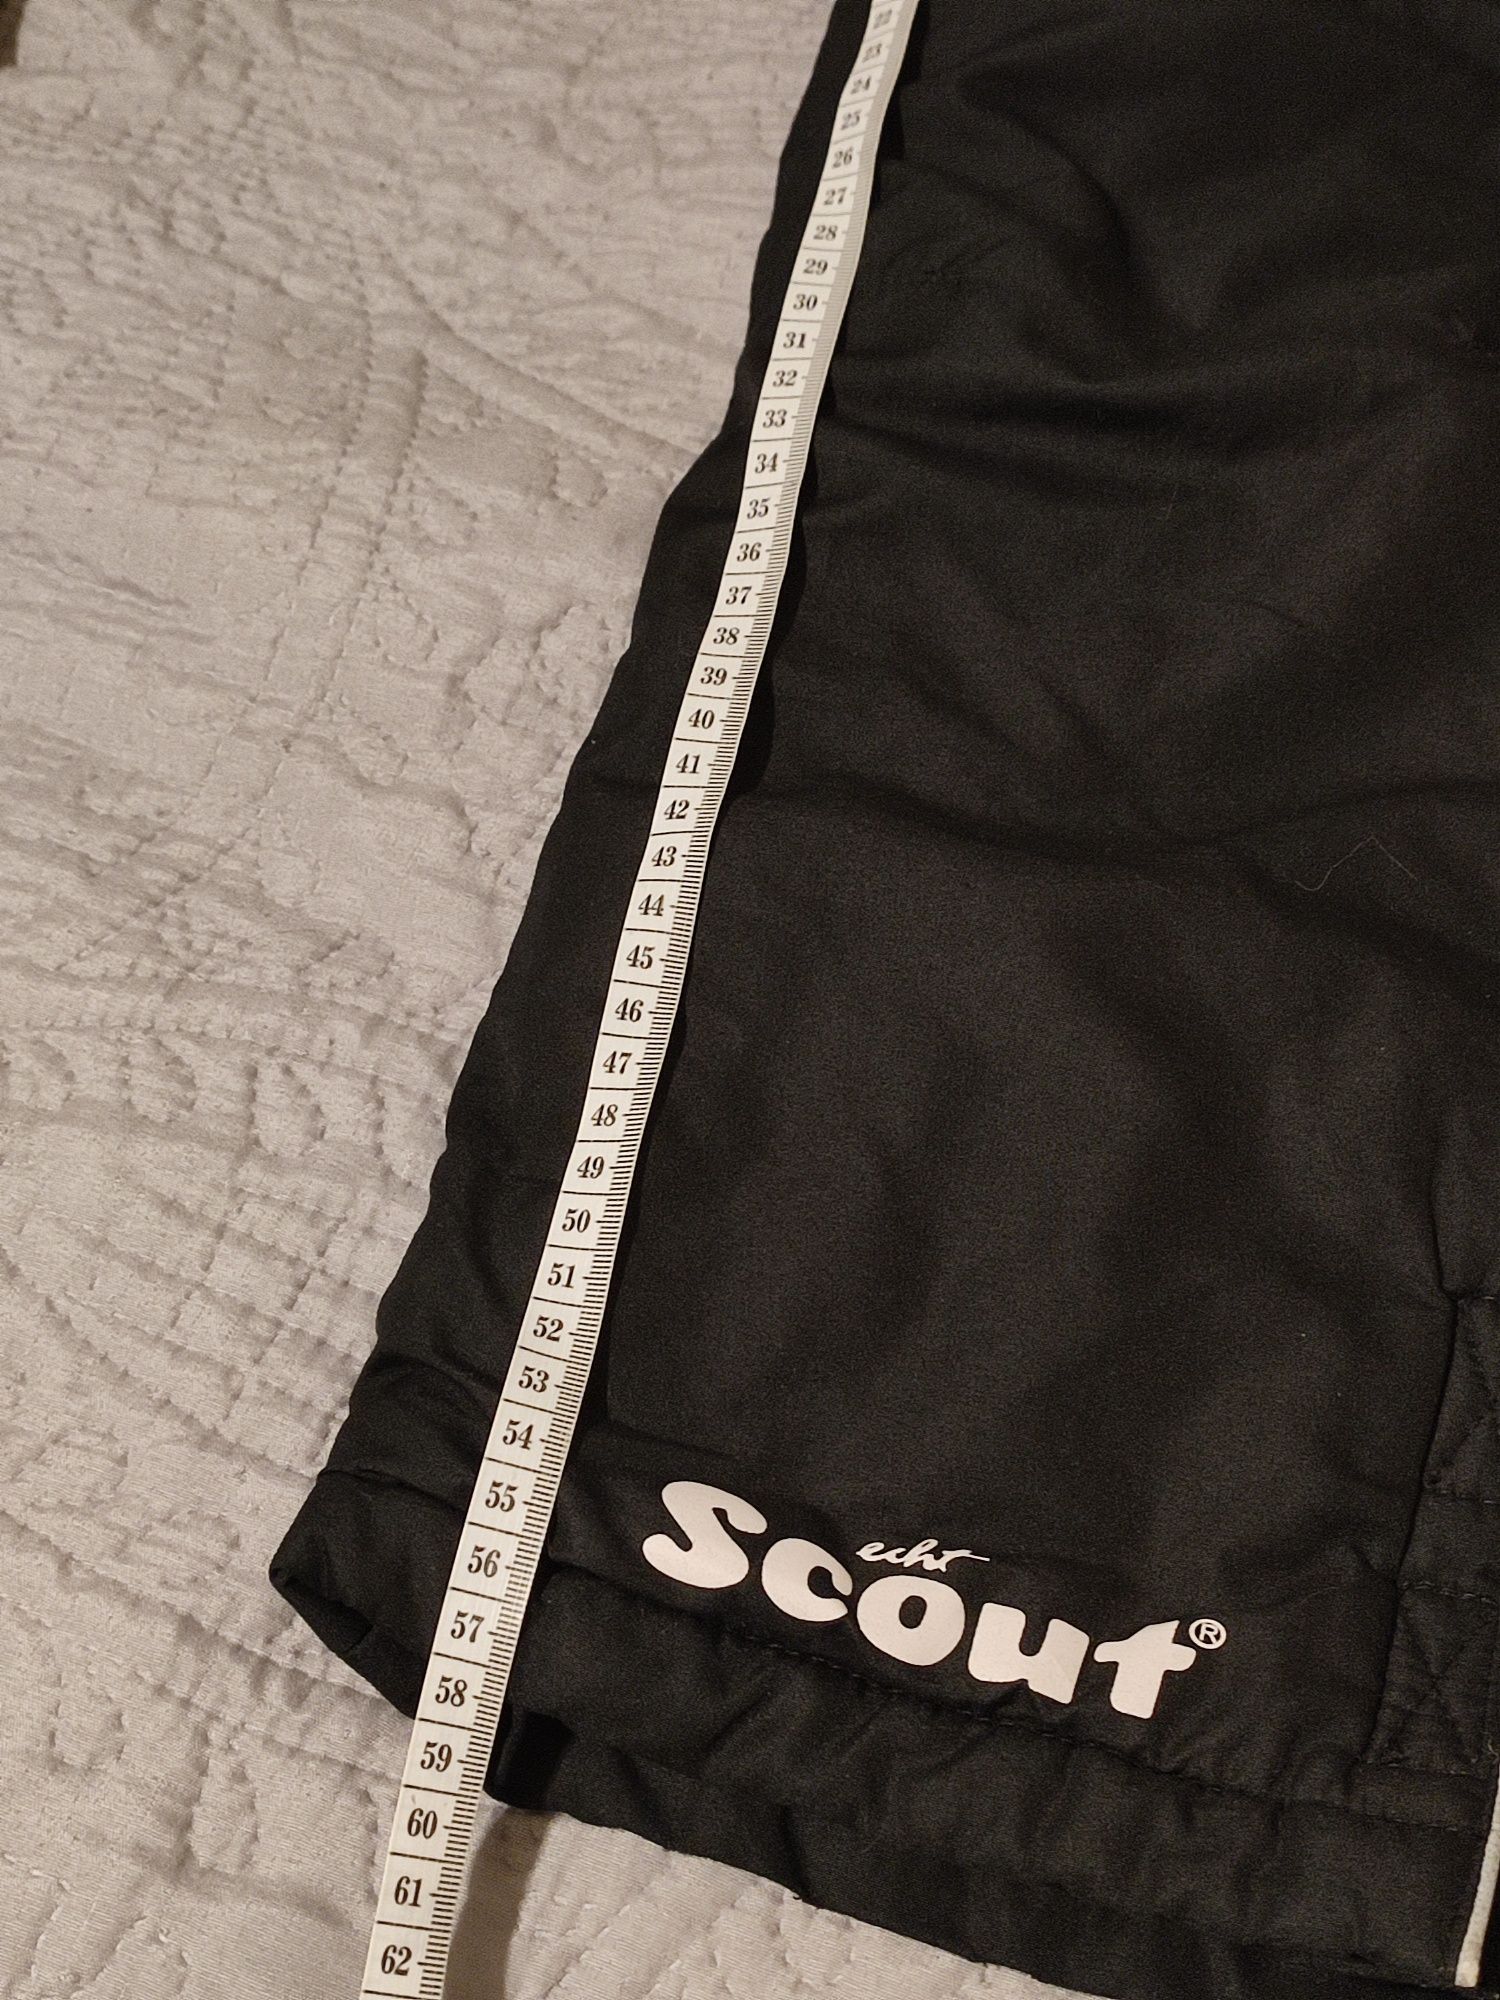 Scout spodnie narciarskie zimowe rozm 128/134 cm